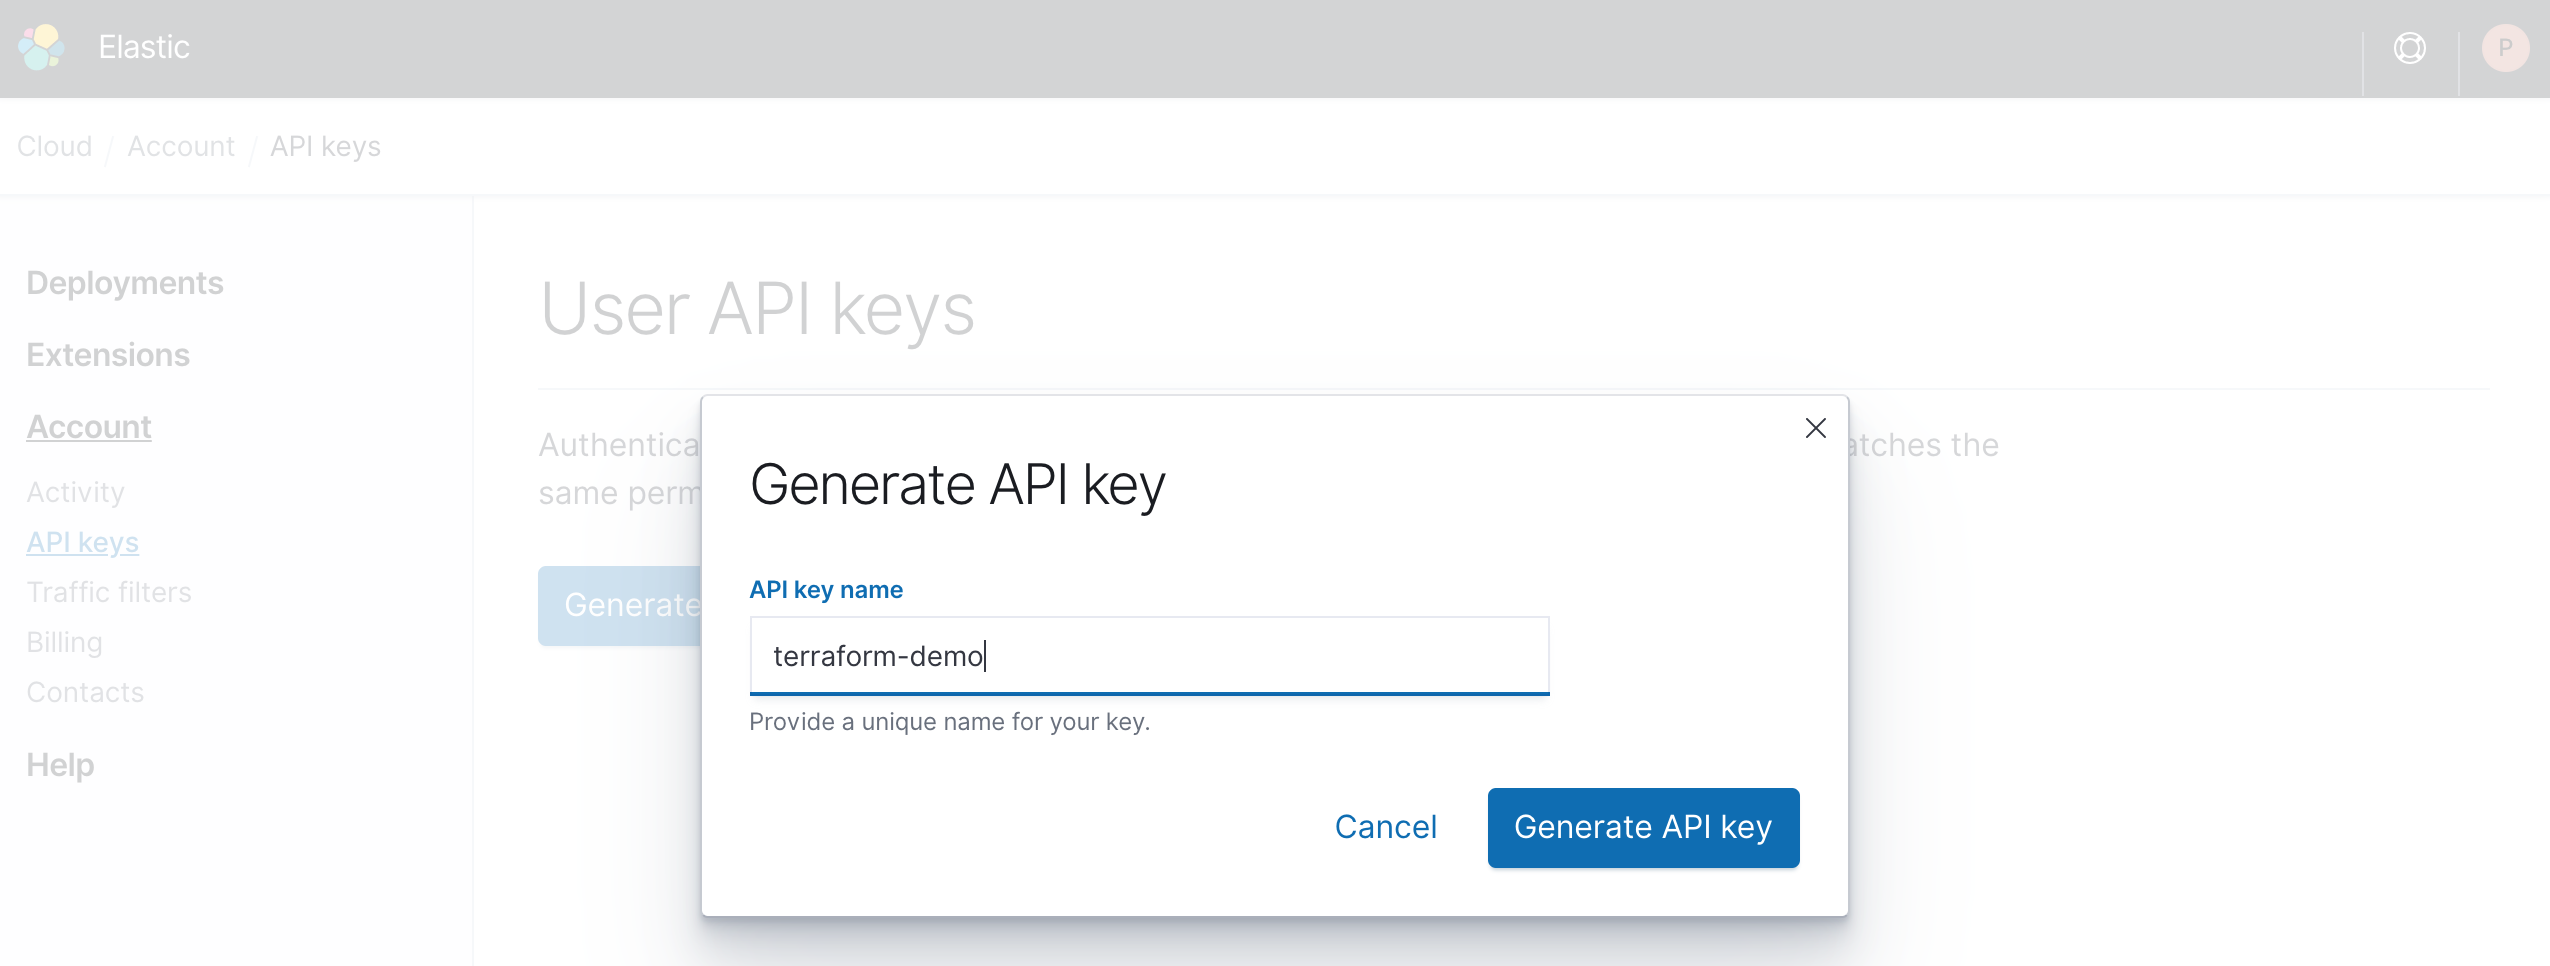 Generate an API key